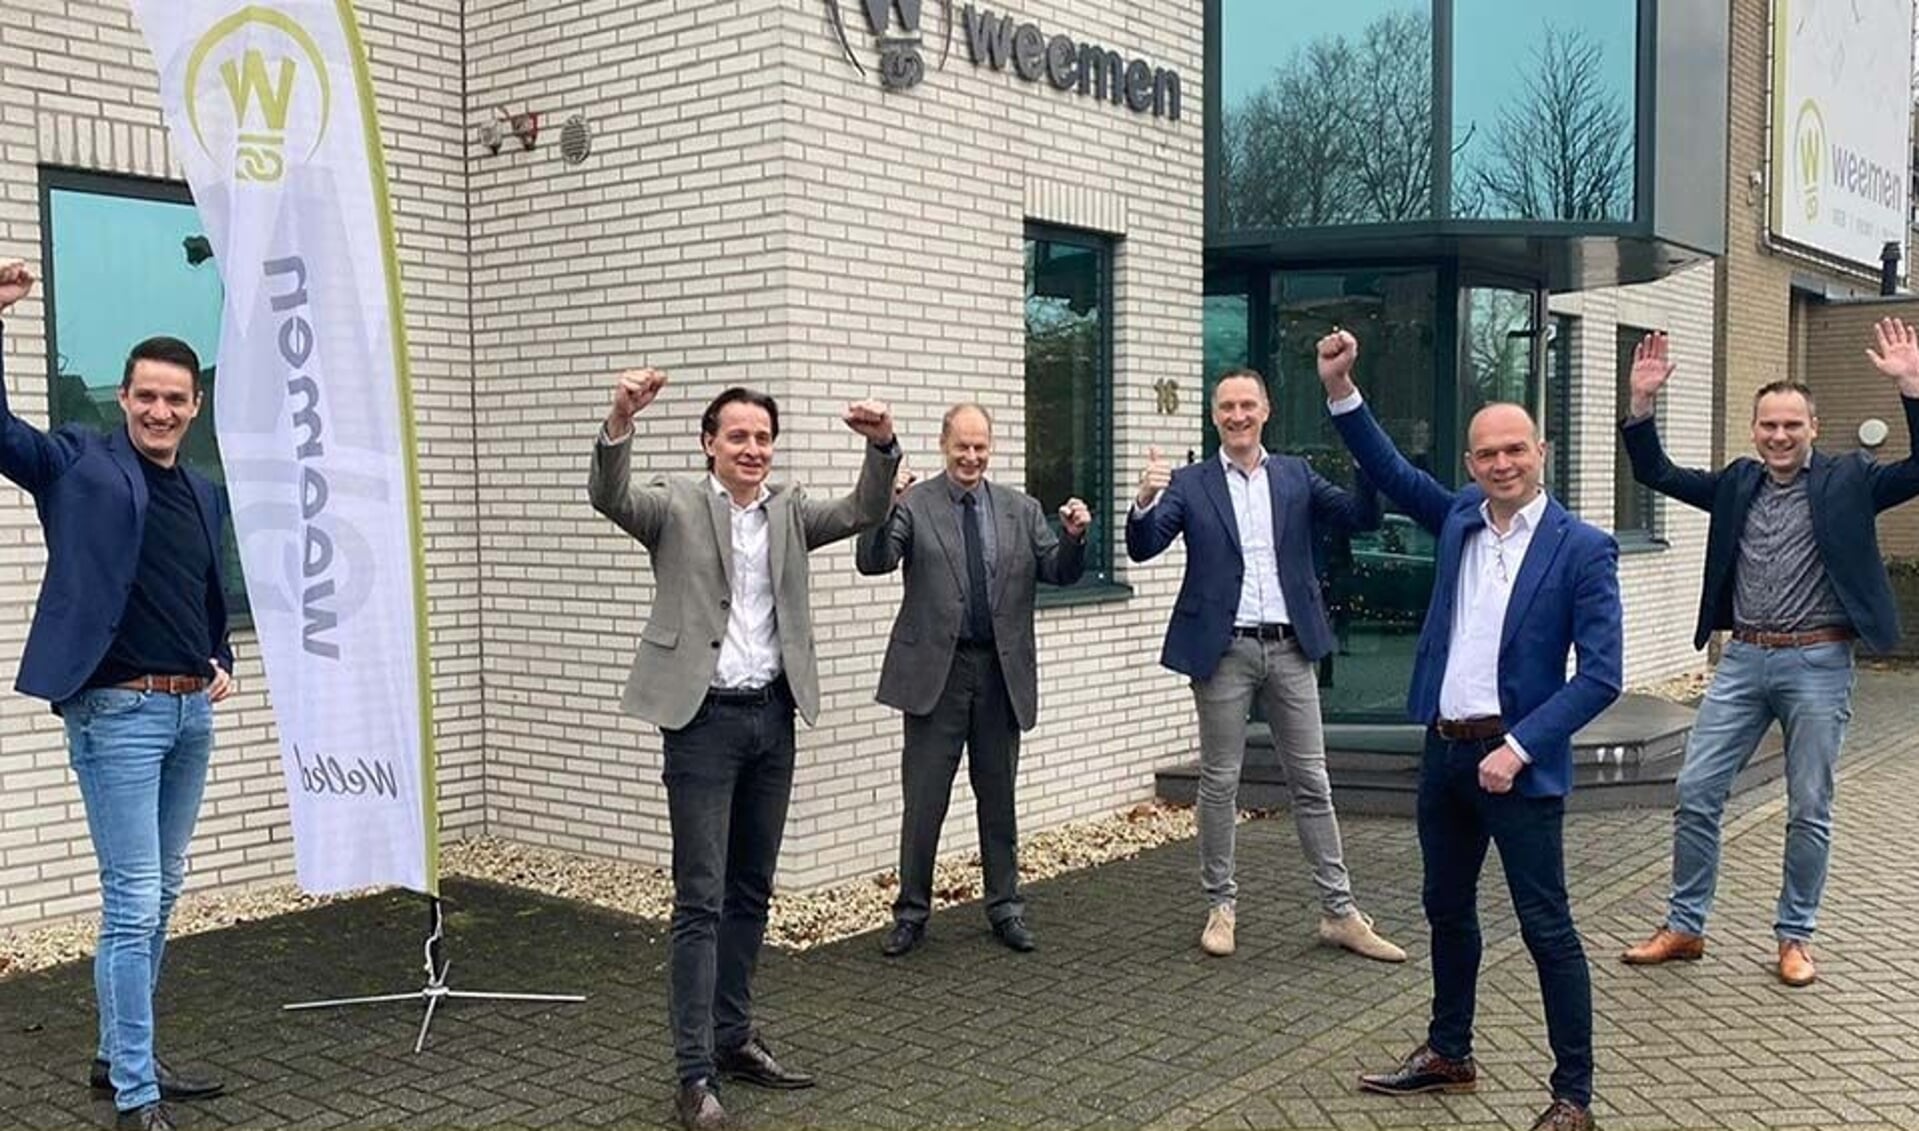 Van links naar rechts: Twan Weemen, Olaf de Croon (RBL), Fred Vlasblom (RBL), Maarten Weemen, Leon Vromans (RBL) en Frank van Hoof (directeur Weemen).